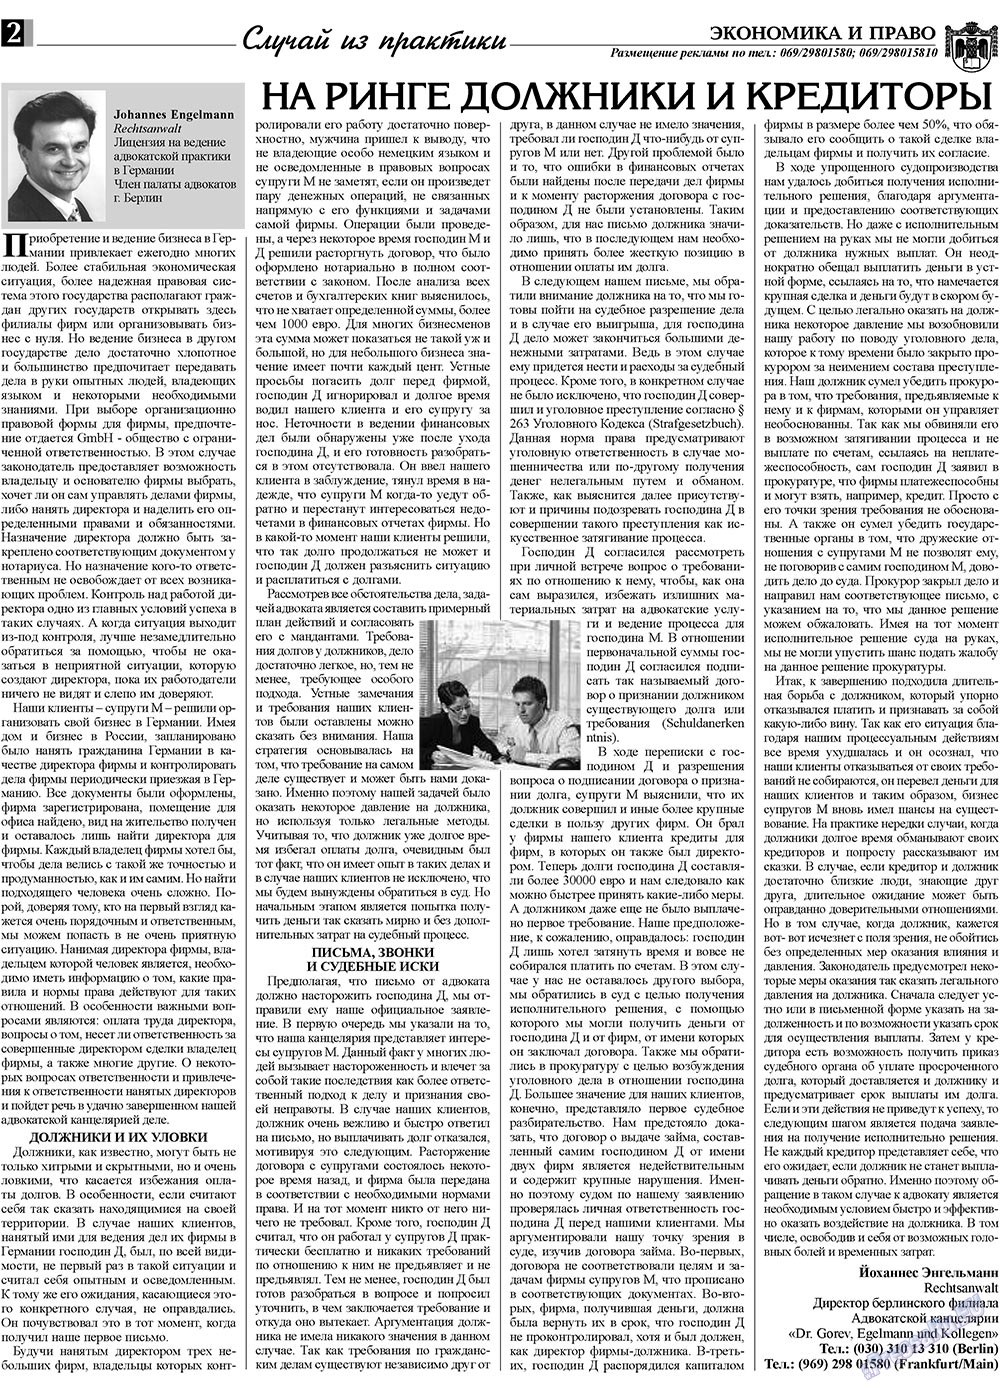 Экономика и право, газета. 2009 №5 стр.2